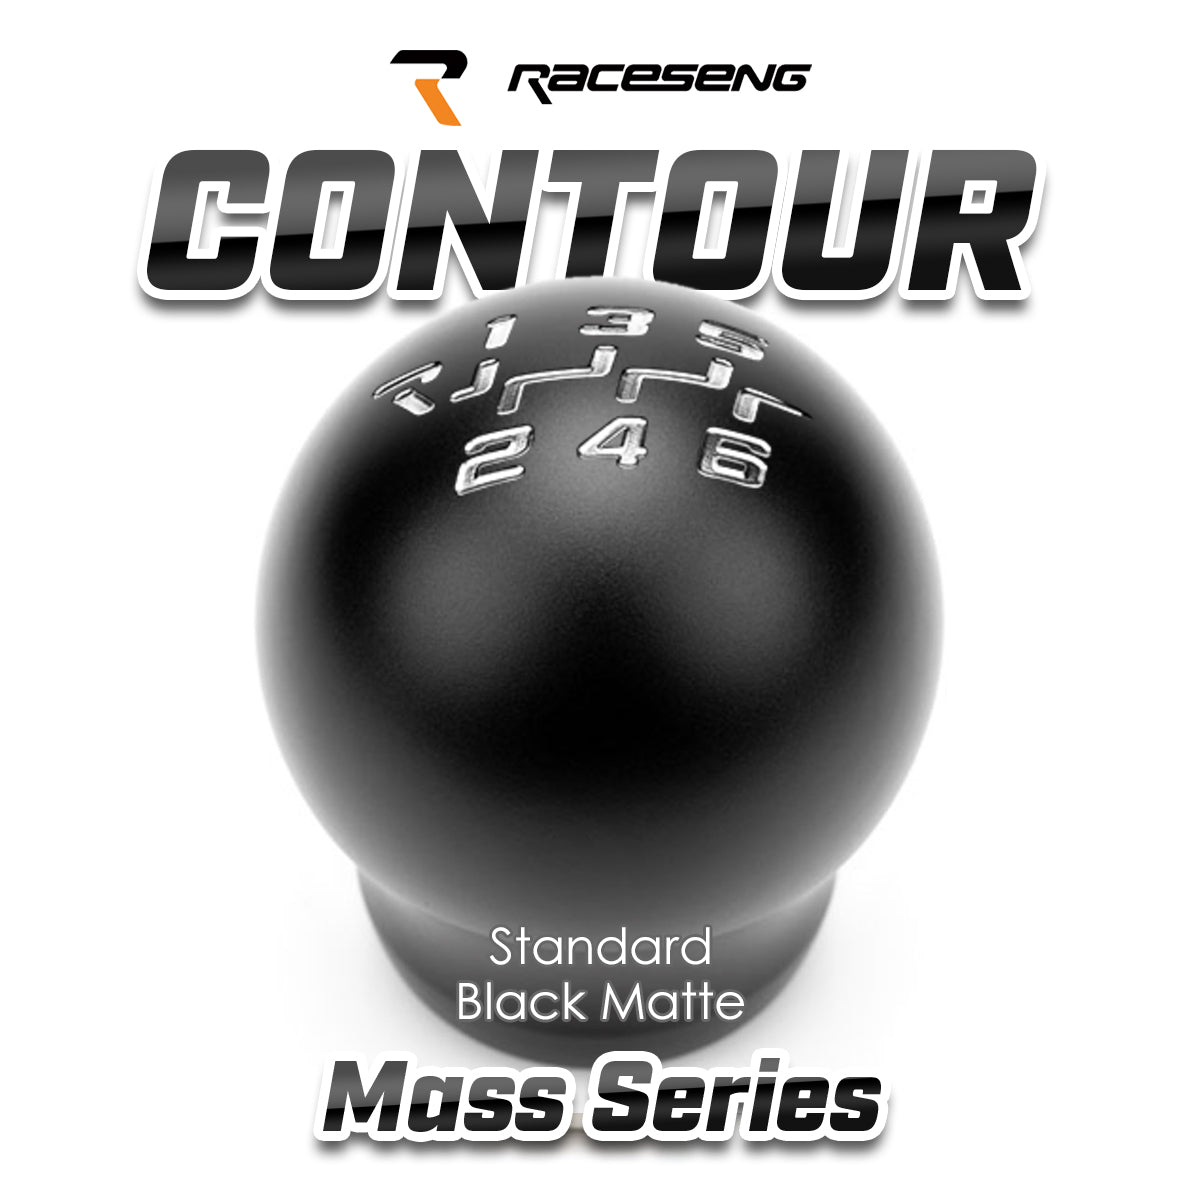 RACESENG レースセングシフトノブ MASSシリーズ CONTOUR コンツアー スタンダードカラー